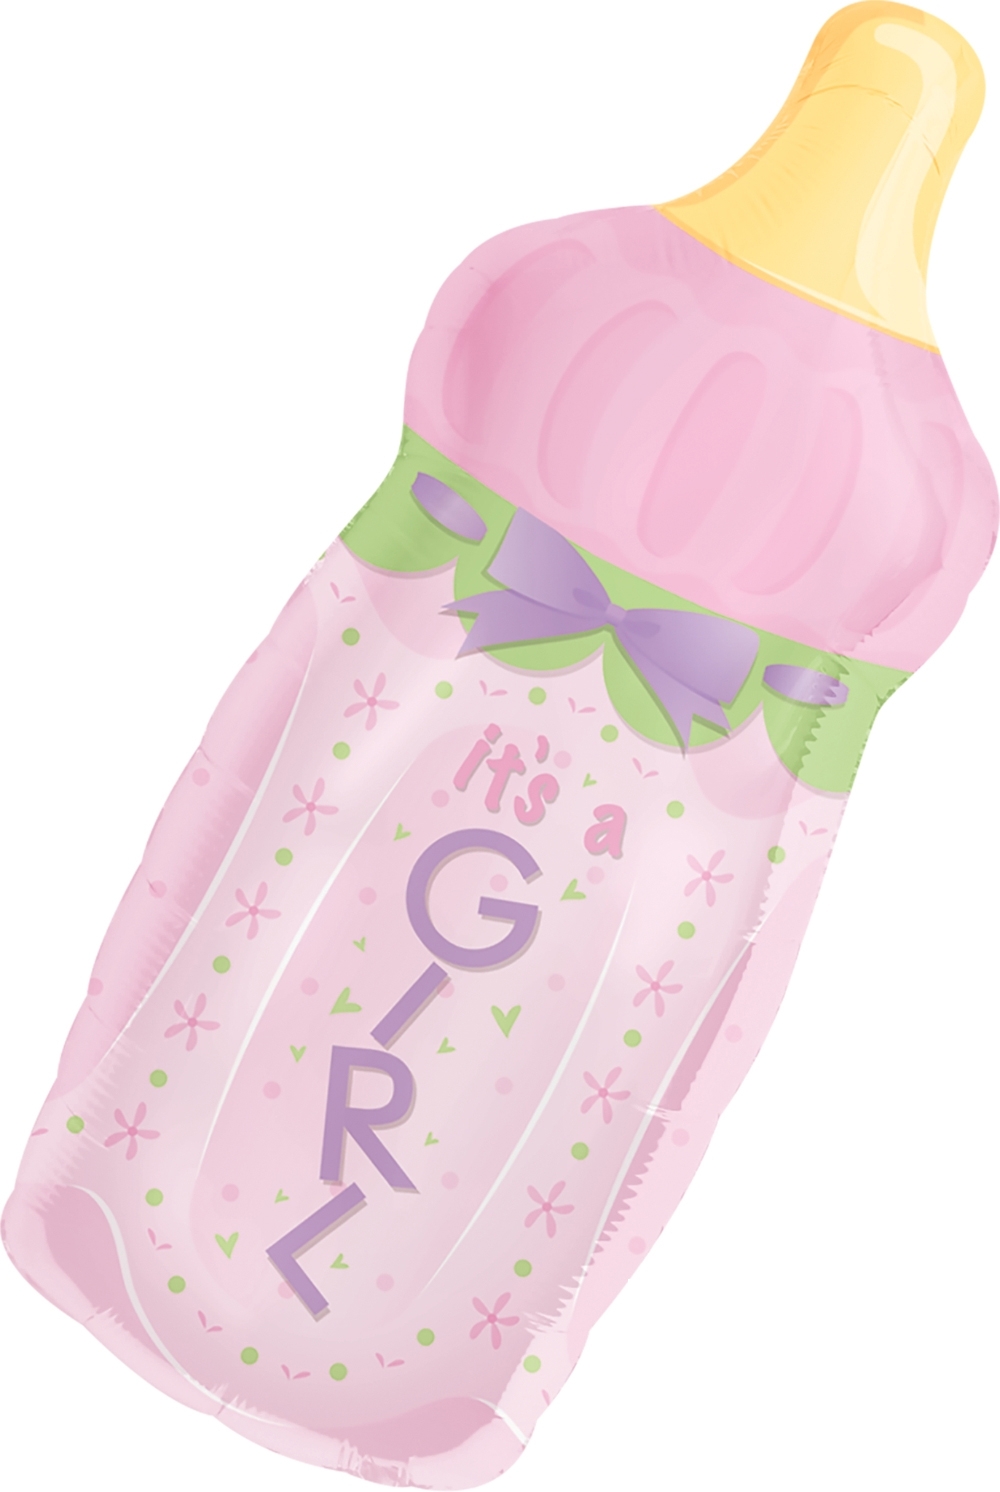 Super Shape - It's A Girl Baby Bottle balloon